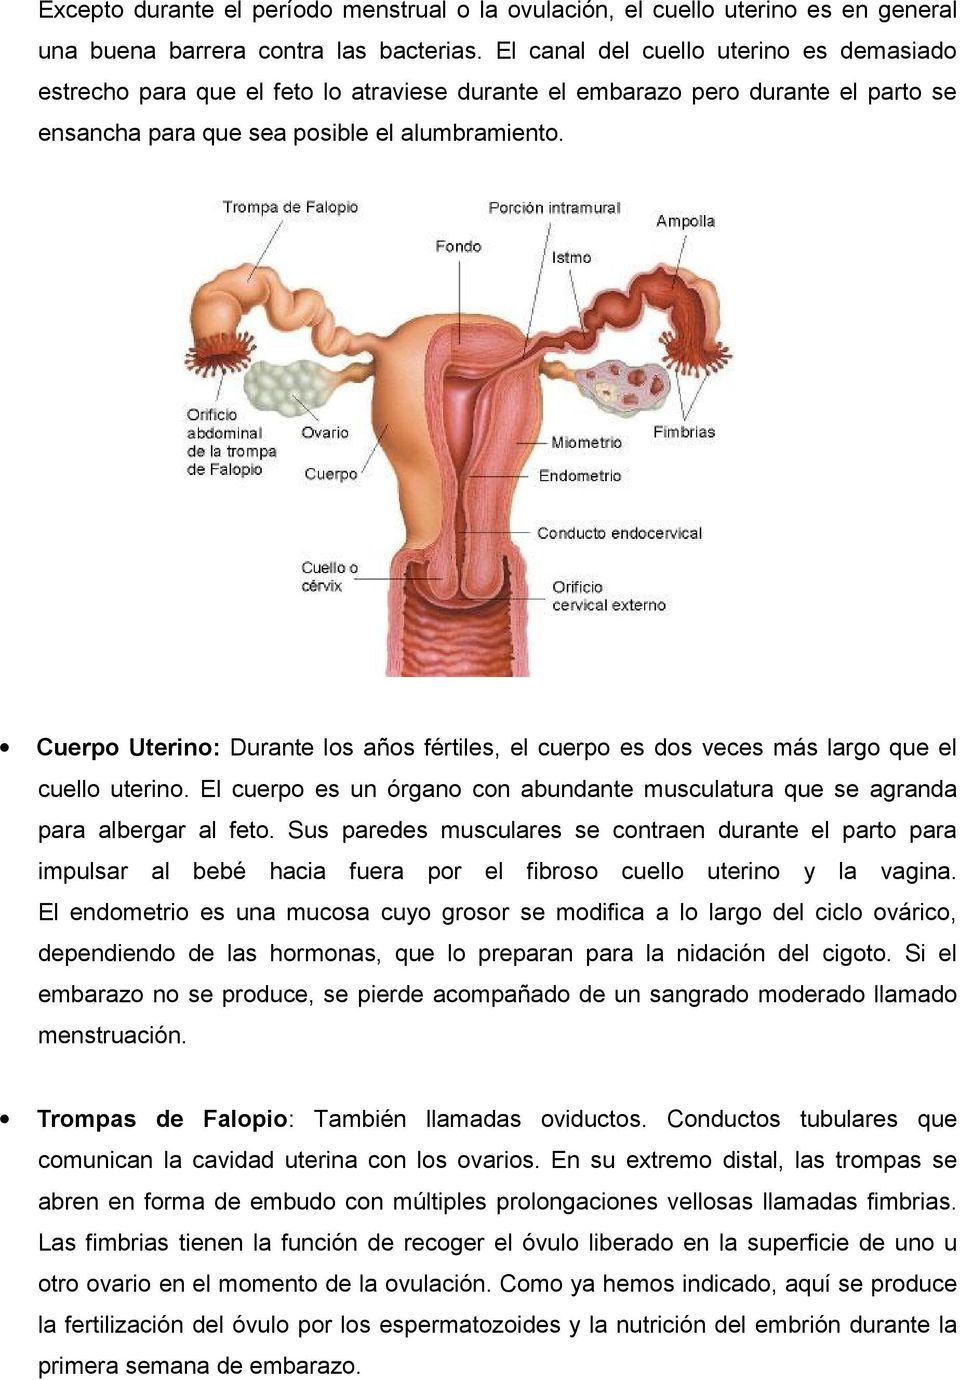 Cuerpo Uterino: Durante los años fértiles, el cuerpo es dos veces más largo que el cuello uterino. El cuerpo es un órgano con abundante musculatura que se agranda para albergar al feto.